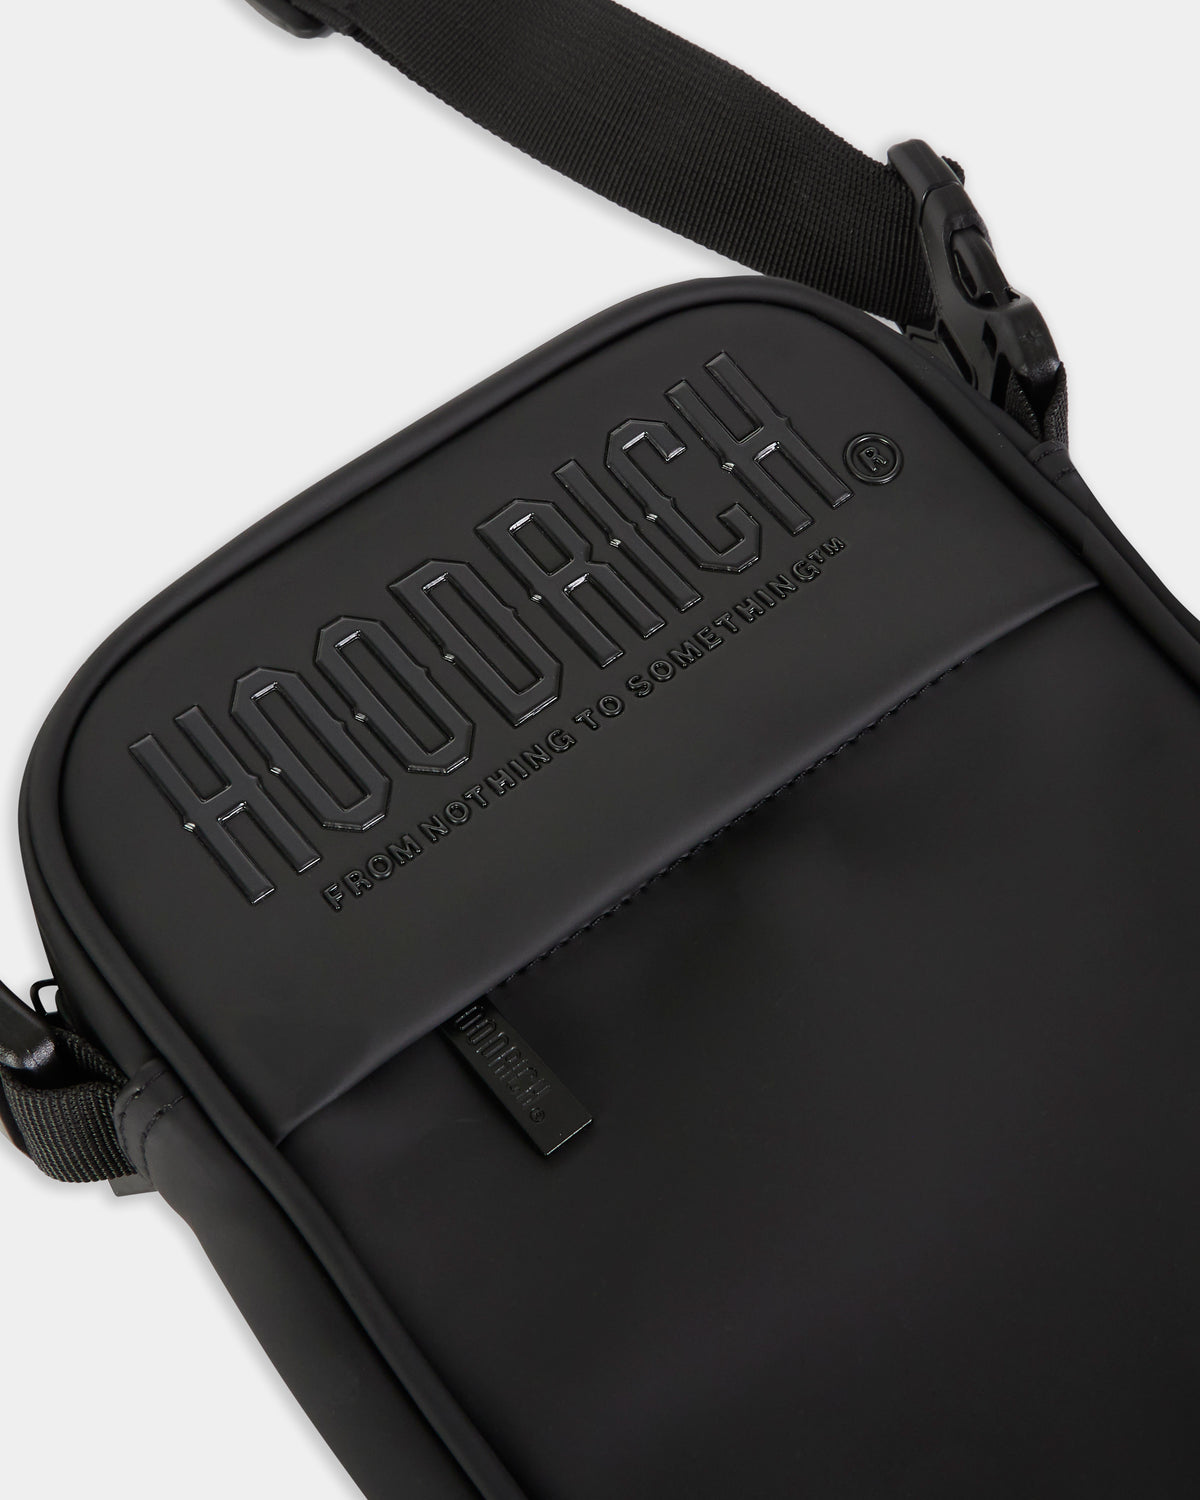 OG Chromatic Mini Bag - Black